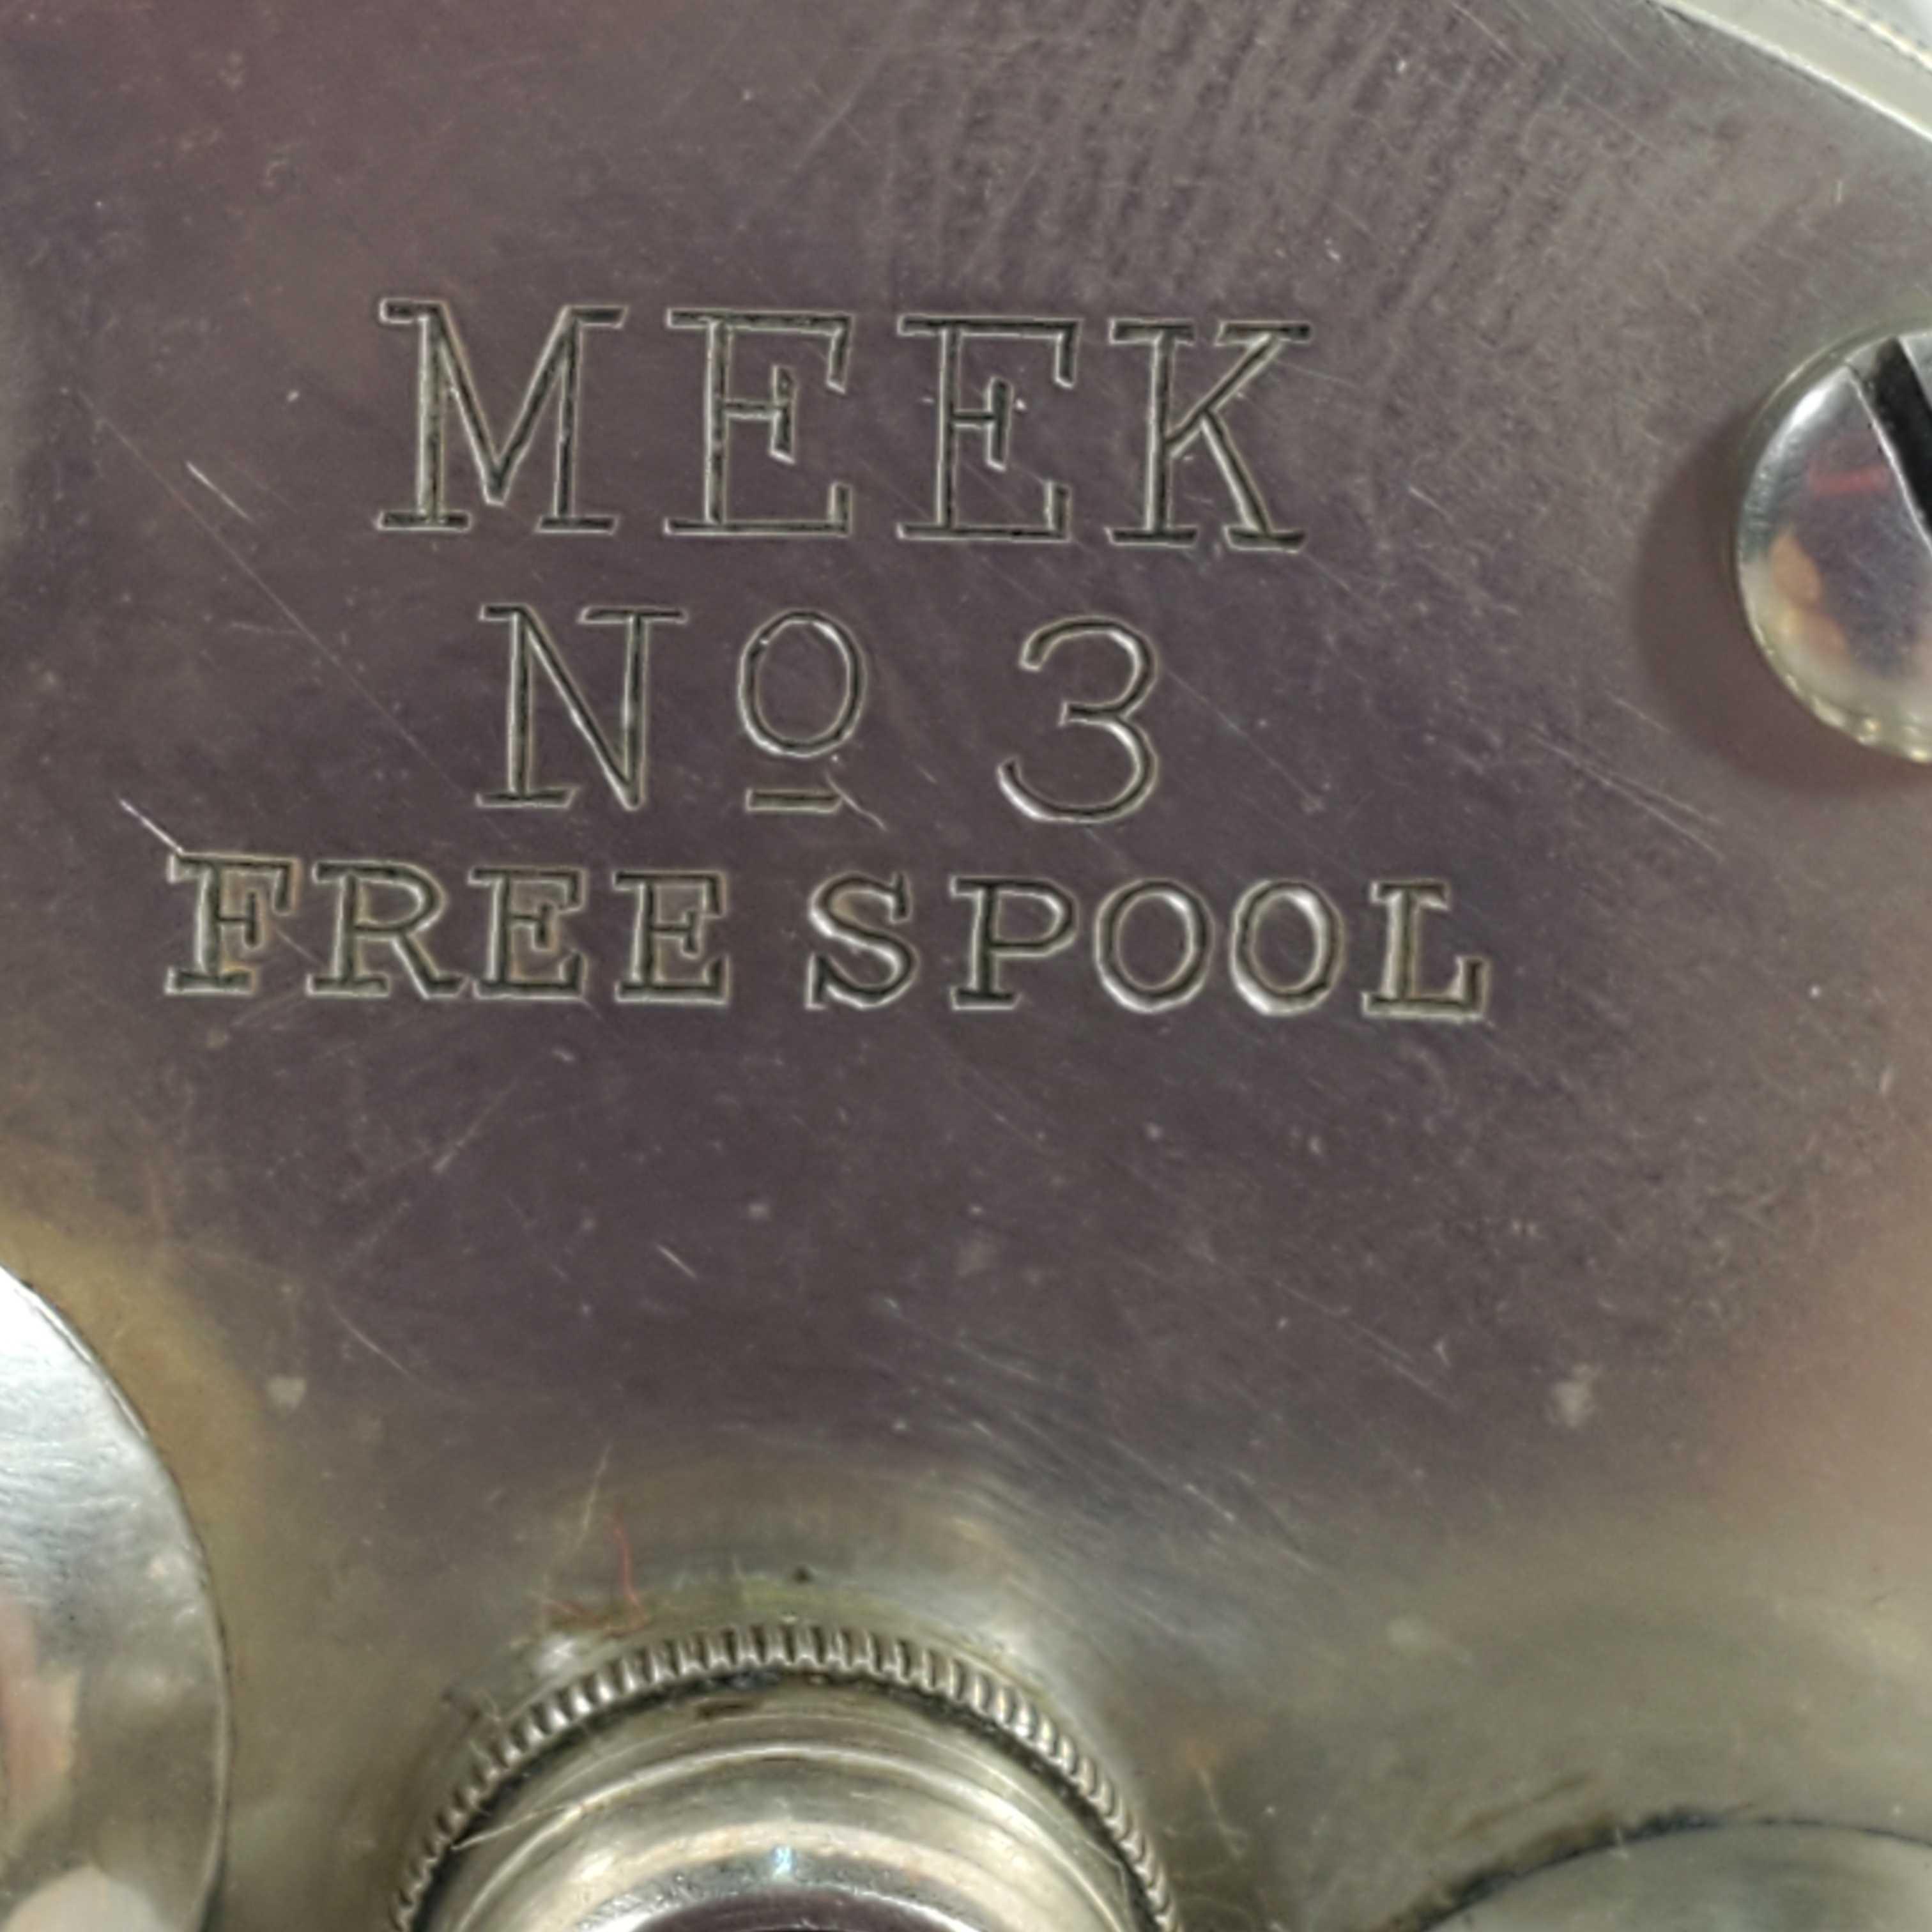 Rare Vintage Meek No. 3 Horton Mfg. Co. Circa 